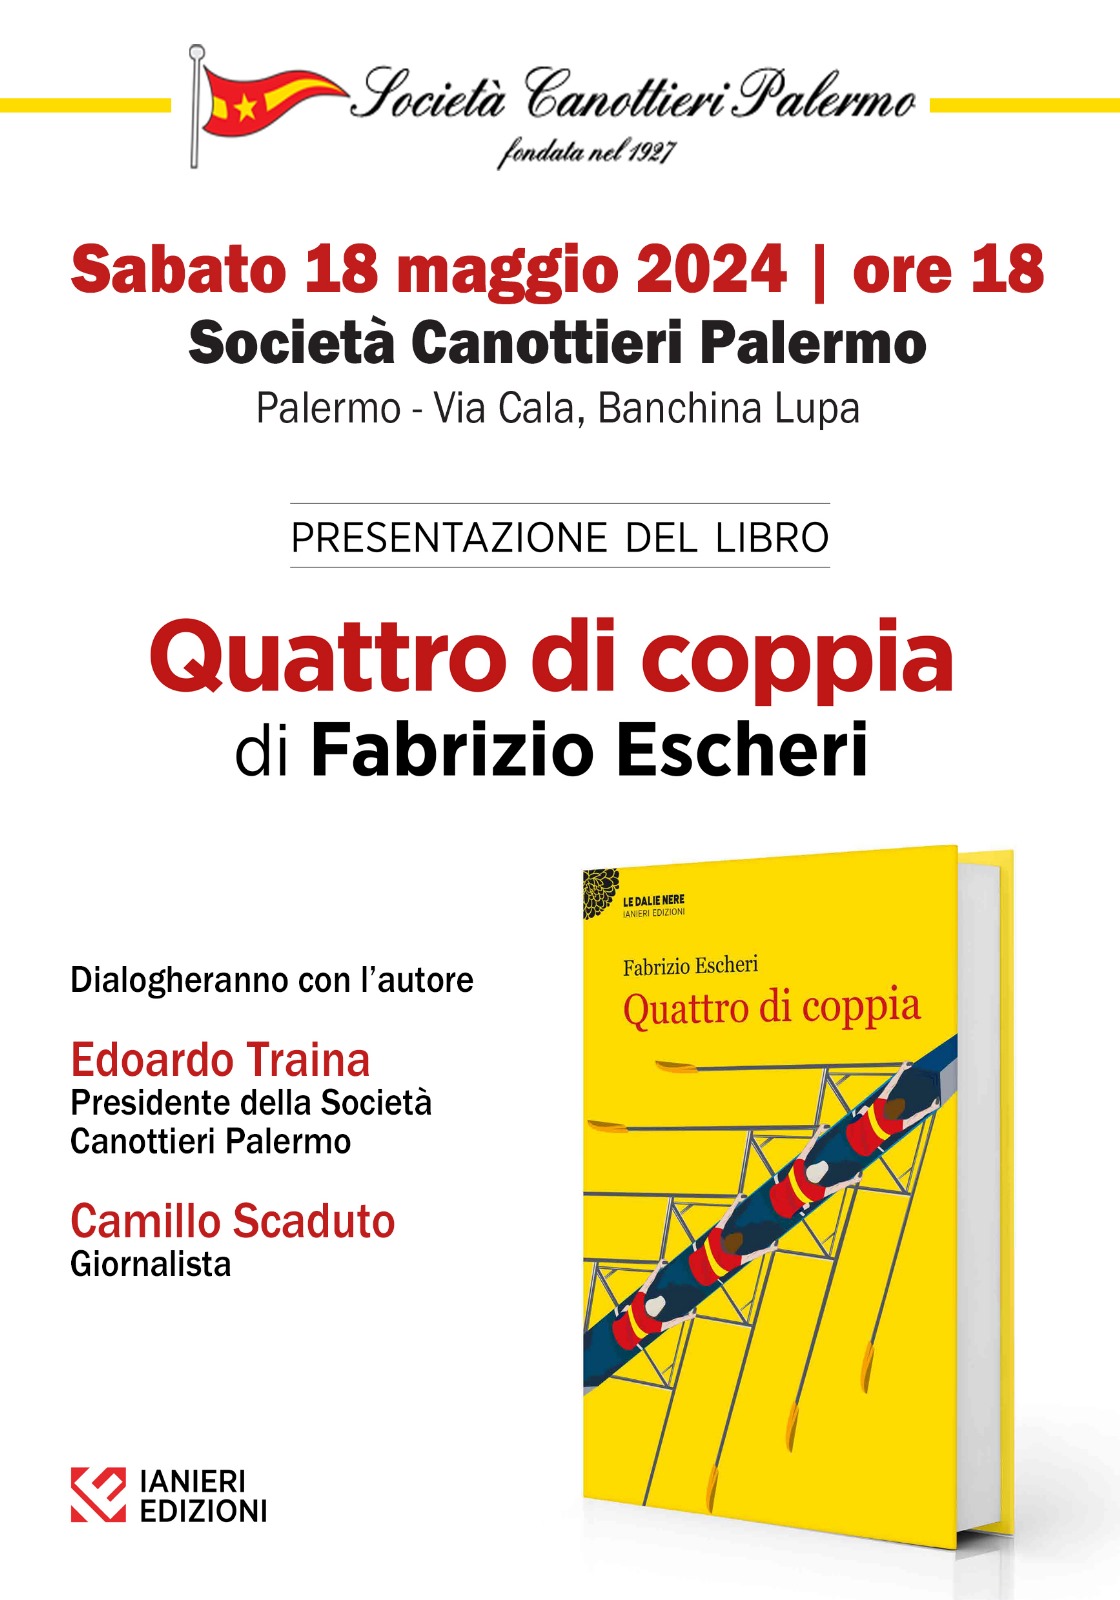 La Società Canottieri Palermo presenta Quattro di coppia di Fabrizio Escheri